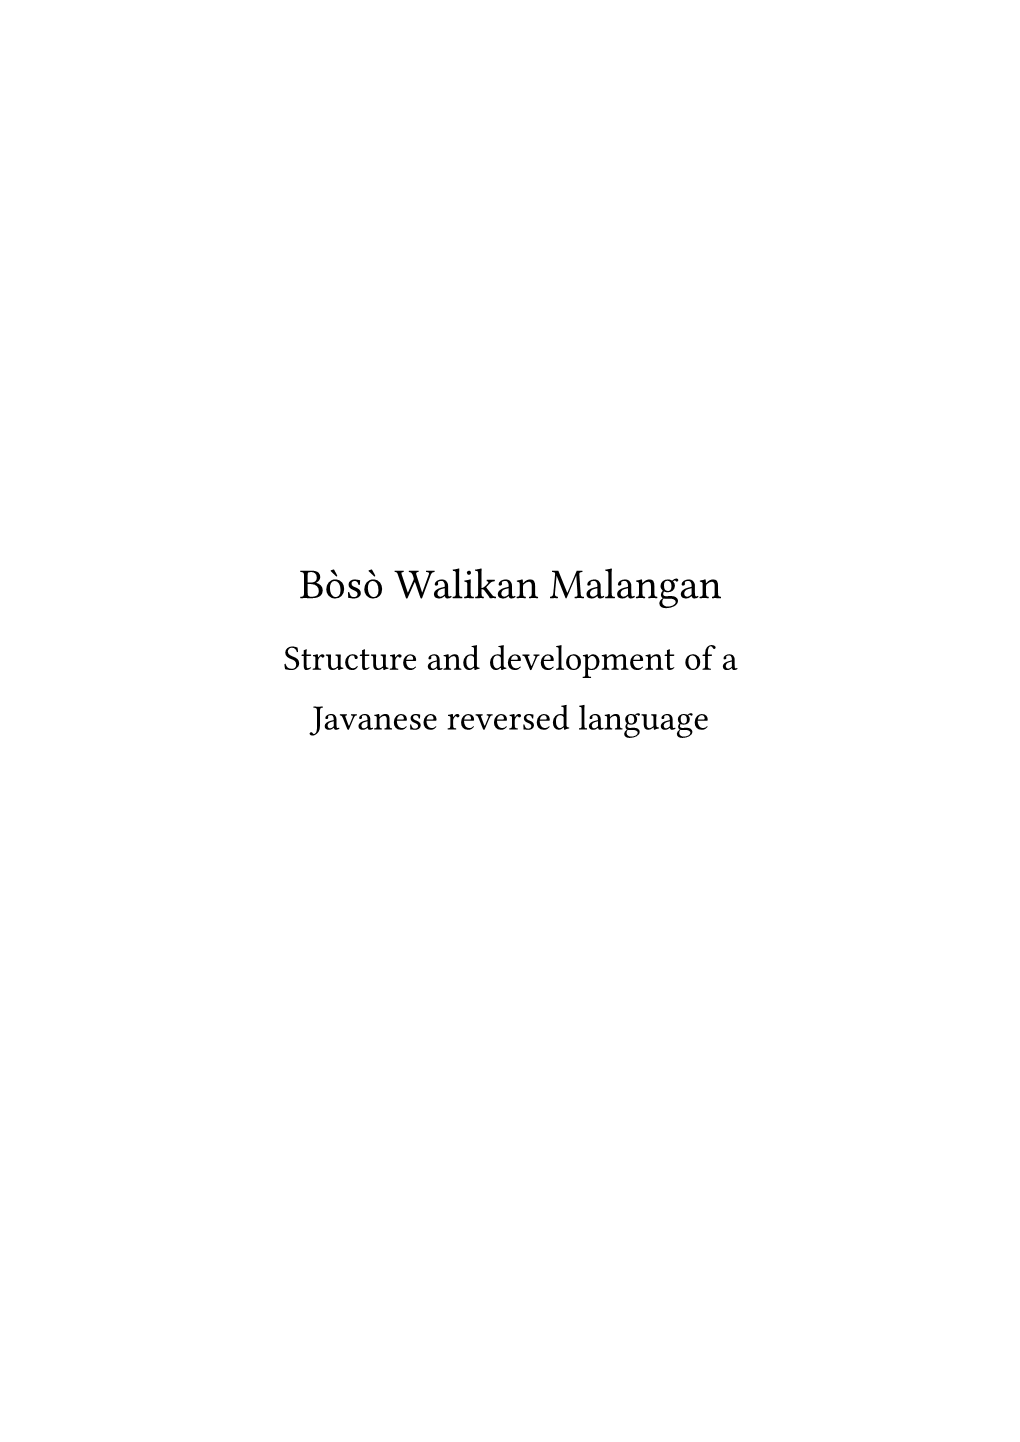 Bòsò Walikan Malangan, ‘Omkeertaal in De Stijl Van Malang’, Is Een Praktijk in Het Javaans Van Malang Waarbij Woorden Worden Omgekeerd